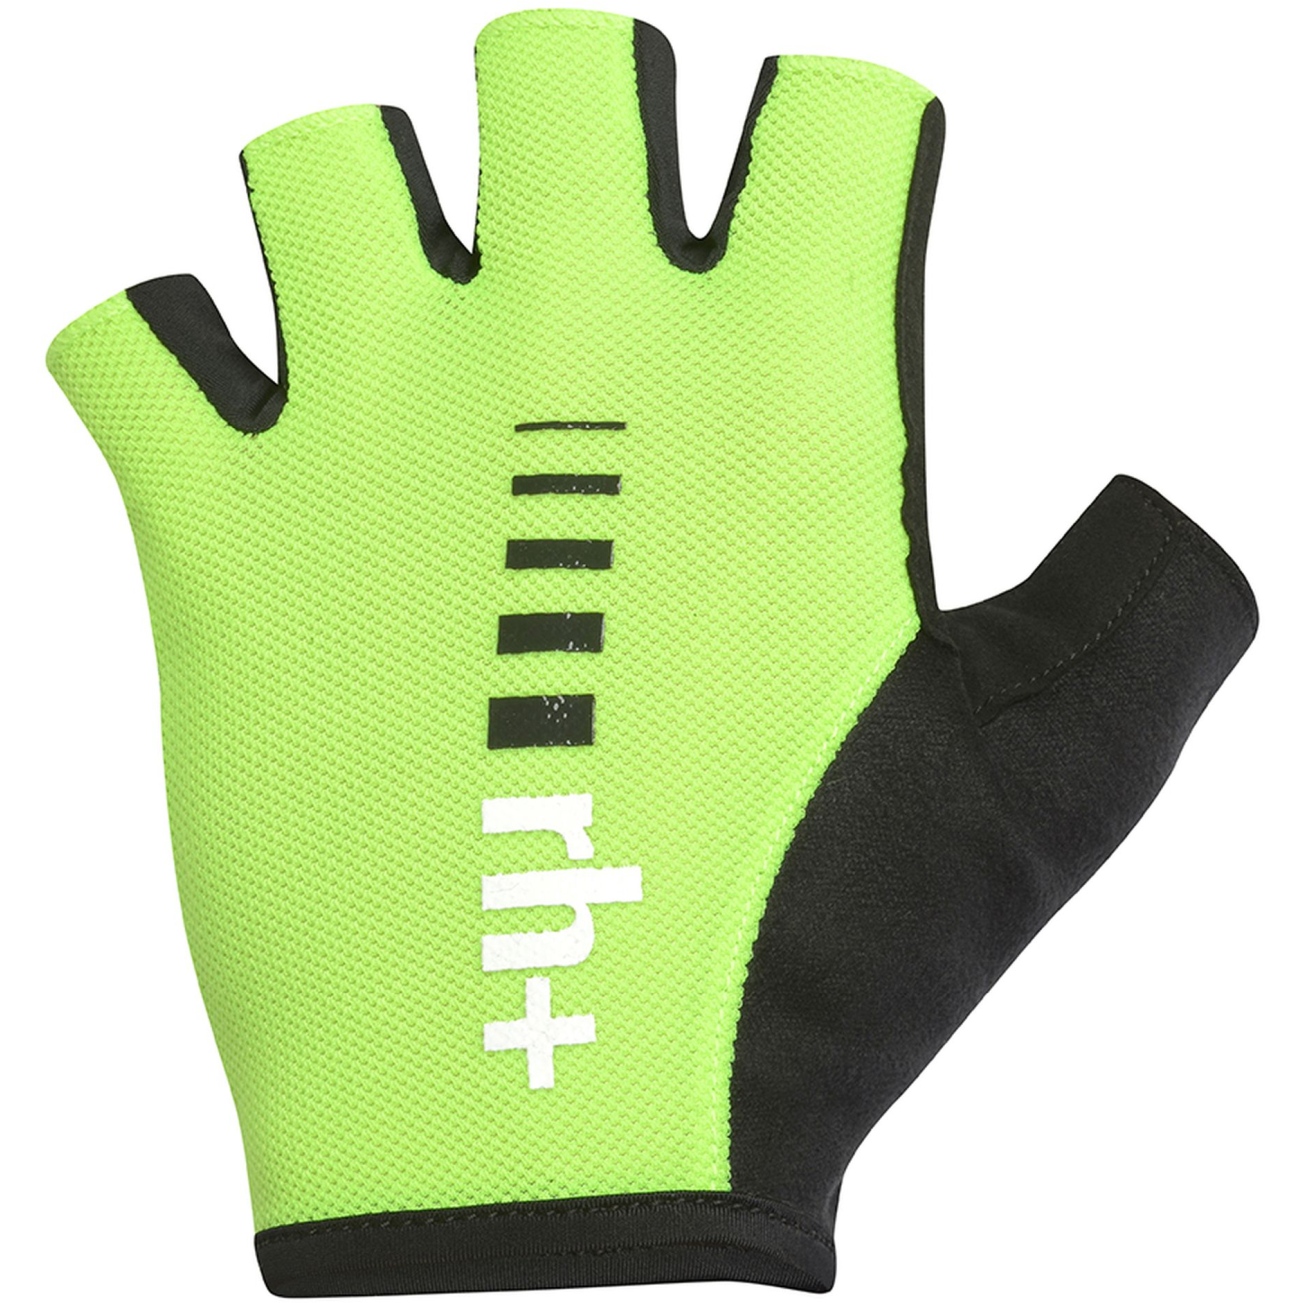 Productfoto van rh+ New Code Handschoenen - Zwart/Acid Lime